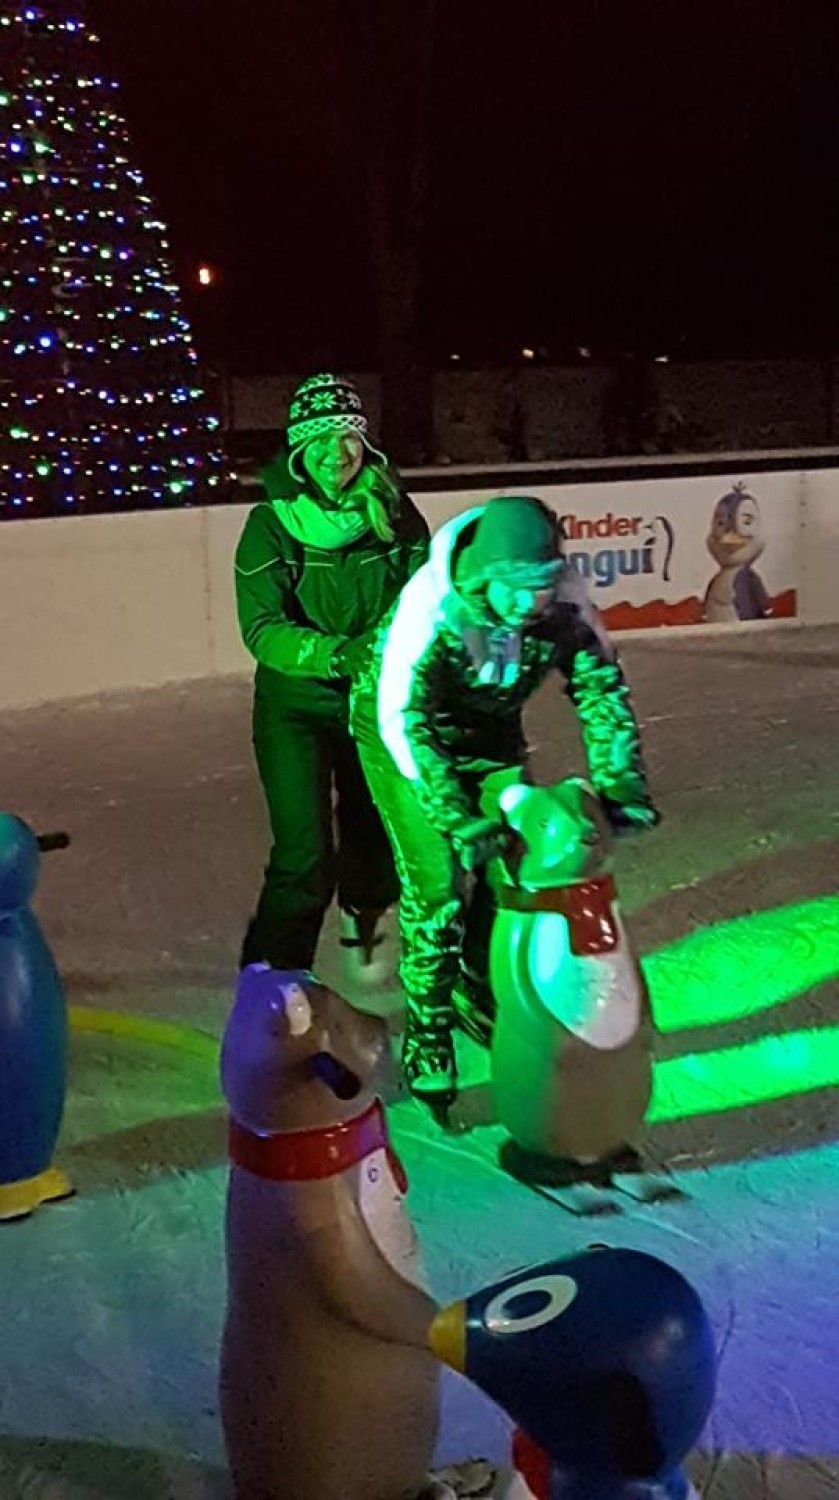 Lododisco w Ustroniu po raz kolejny, łyżwy, tańce i świetna zabawa na ustrońskim lodowisku (ZDJĘCIA)